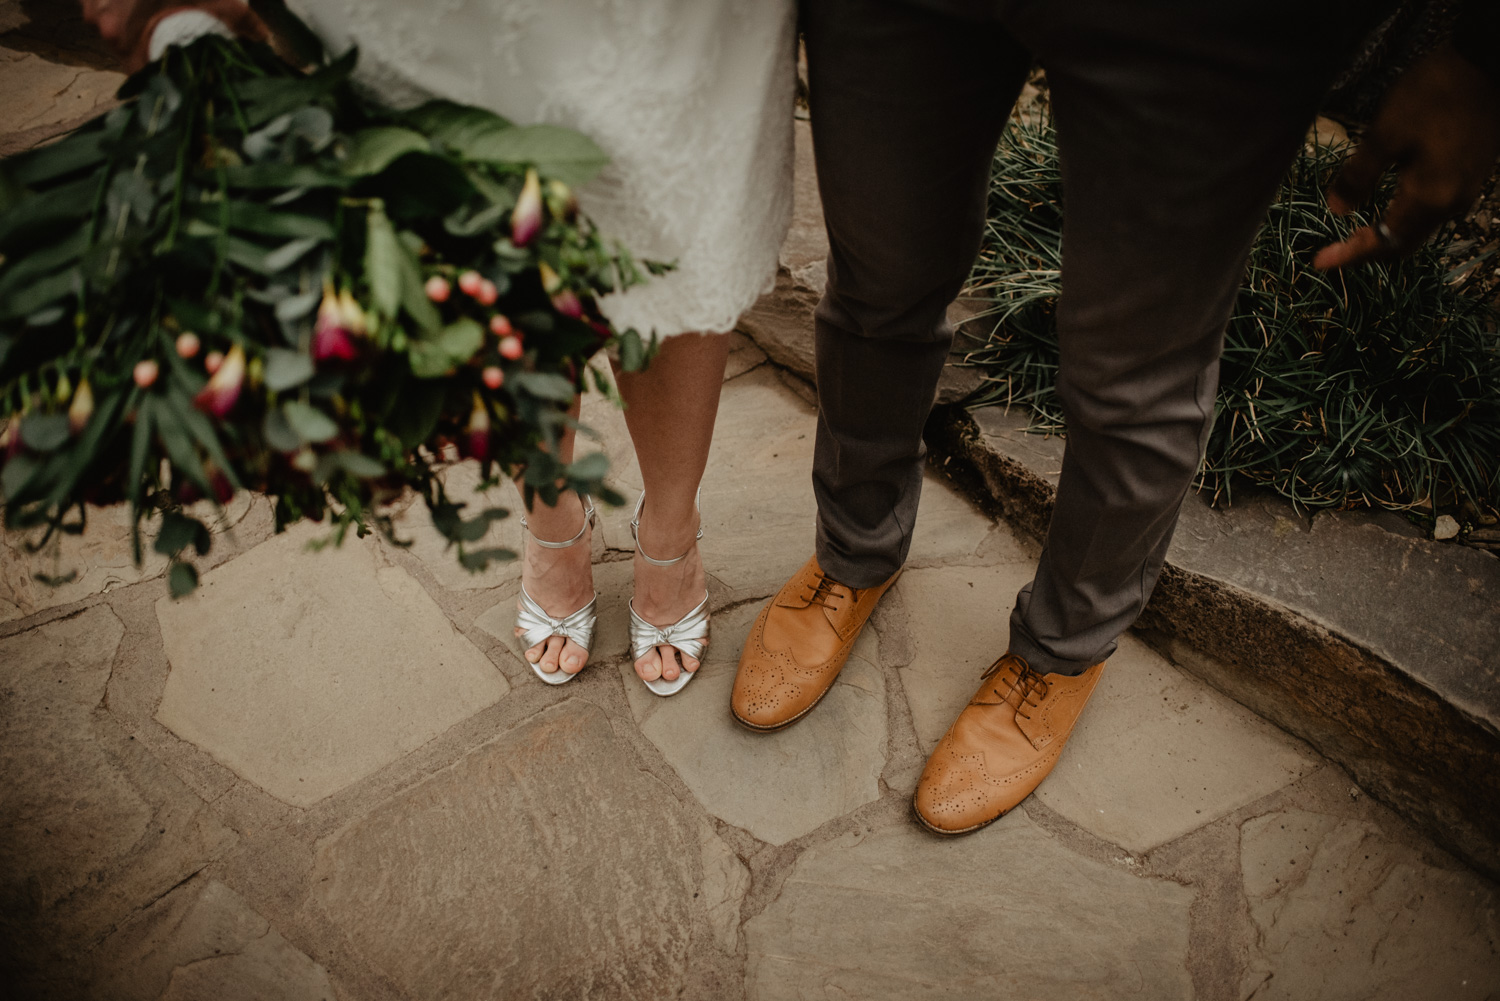 Detailfoto der Füße des Brautpaares. Sie hat ein kurzes Kleid und silberfarbene High Heels an, er eine dunkelgraue Stoffhose und hellbraune Anzugschuhe.